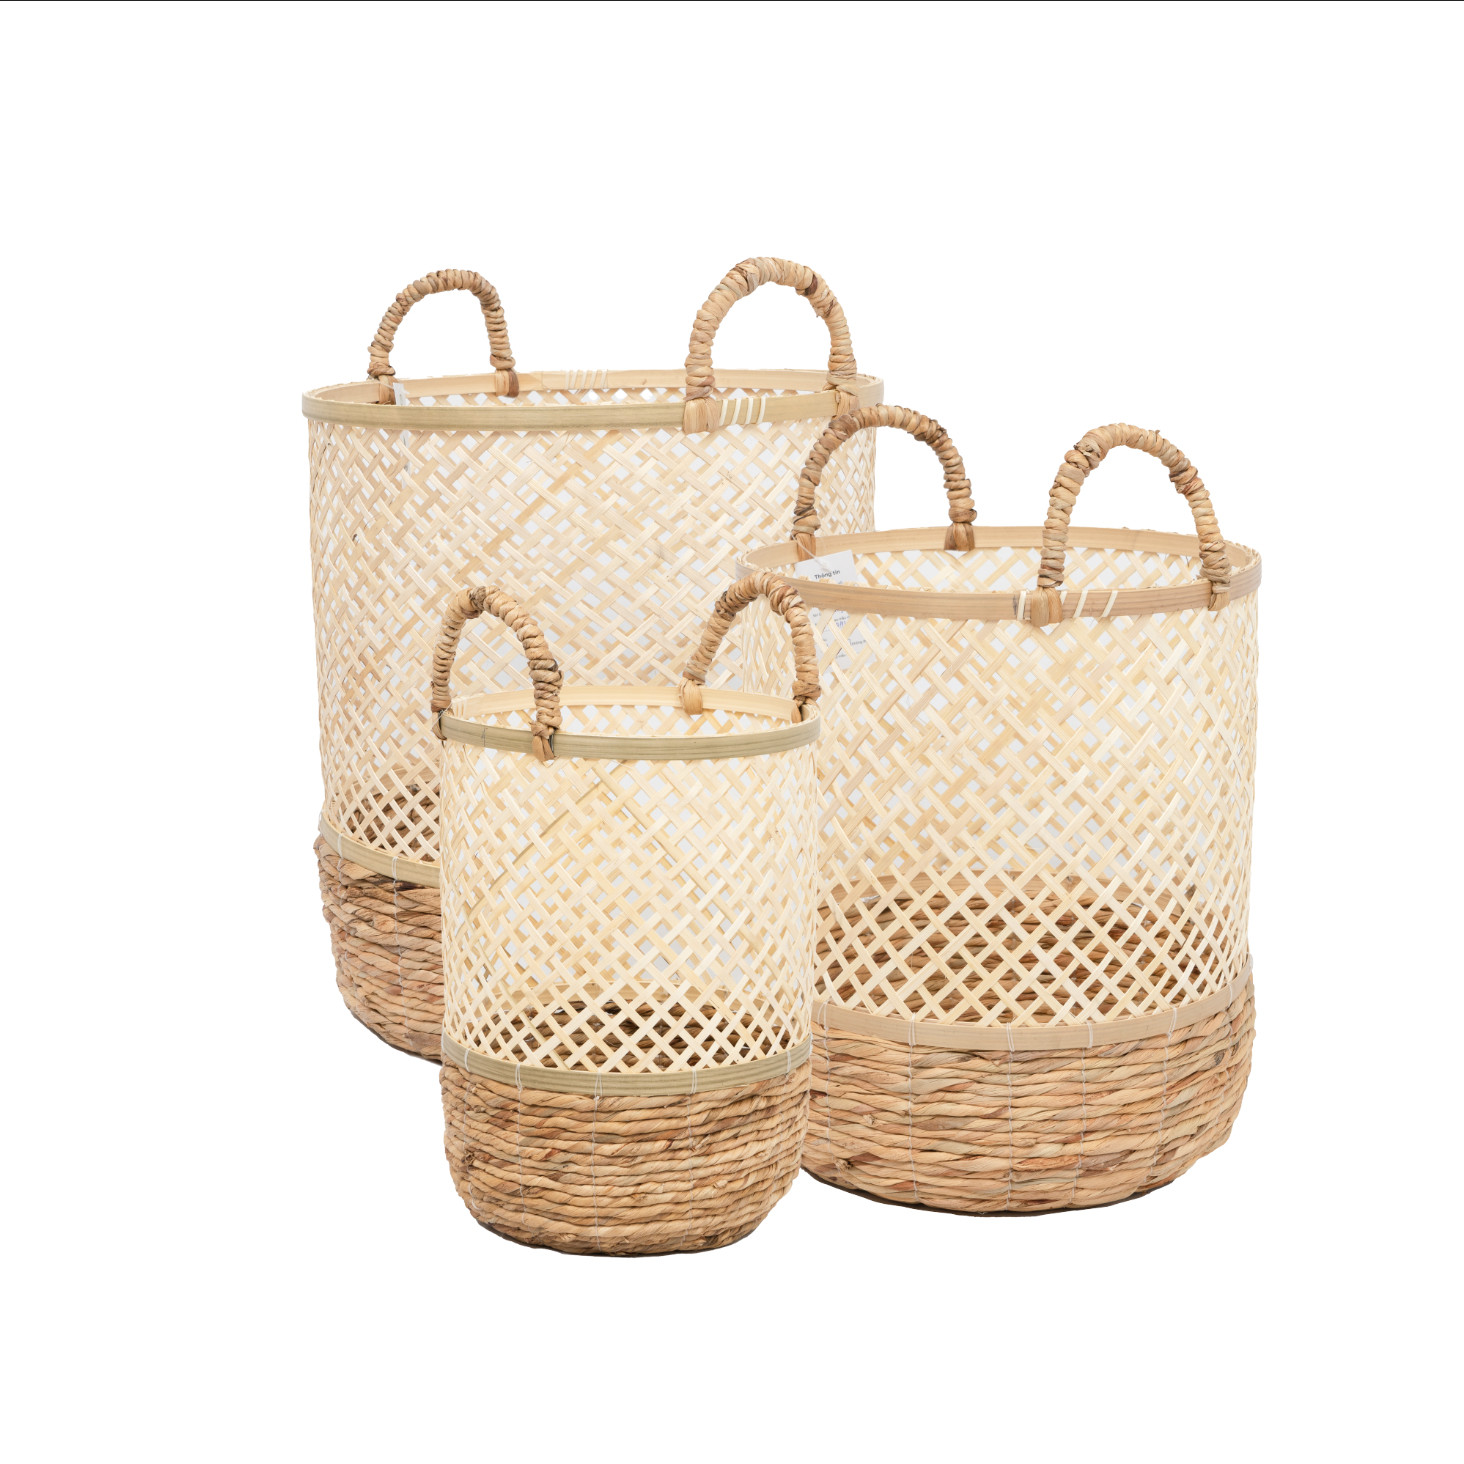 Set 3 Kolaka Bamboo Round Baskets